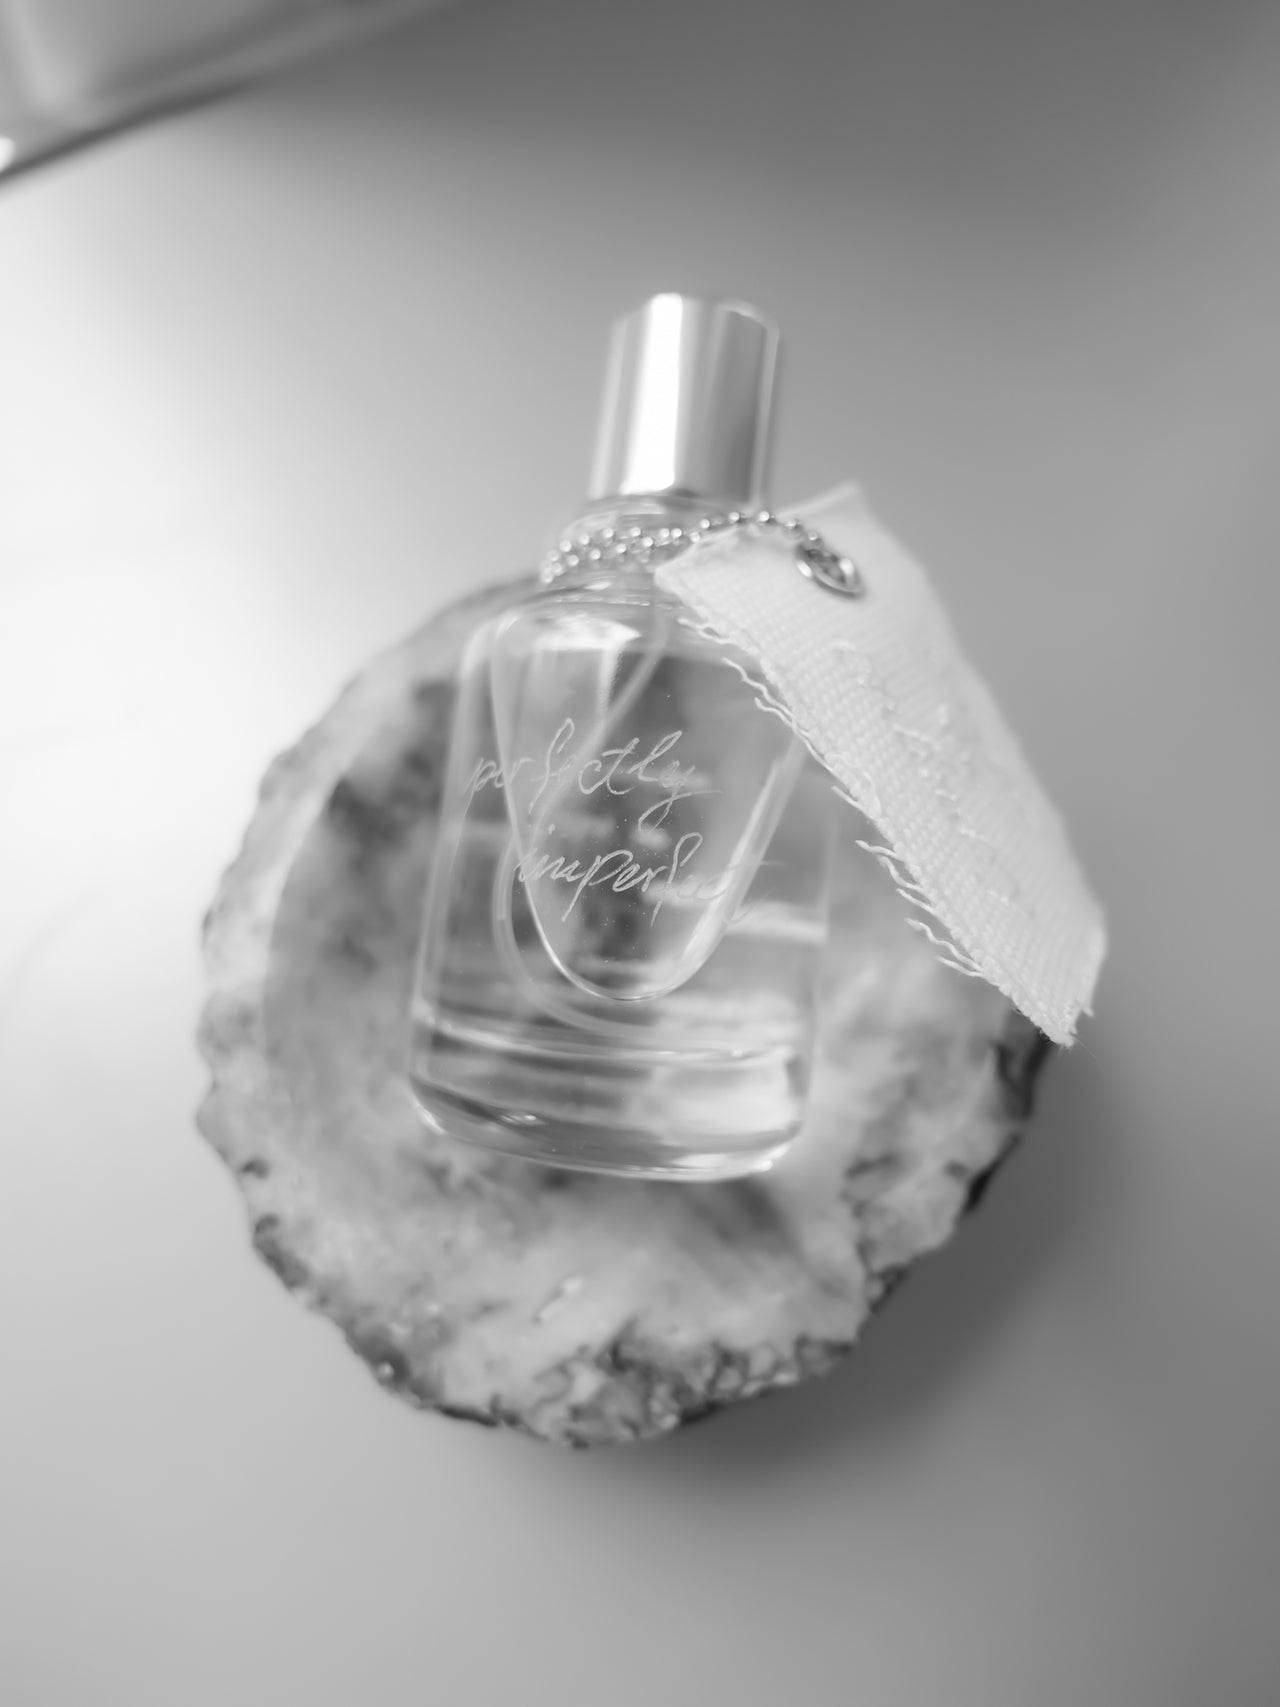 Escape the Ordinary, Eau de Parfum, 50 ml